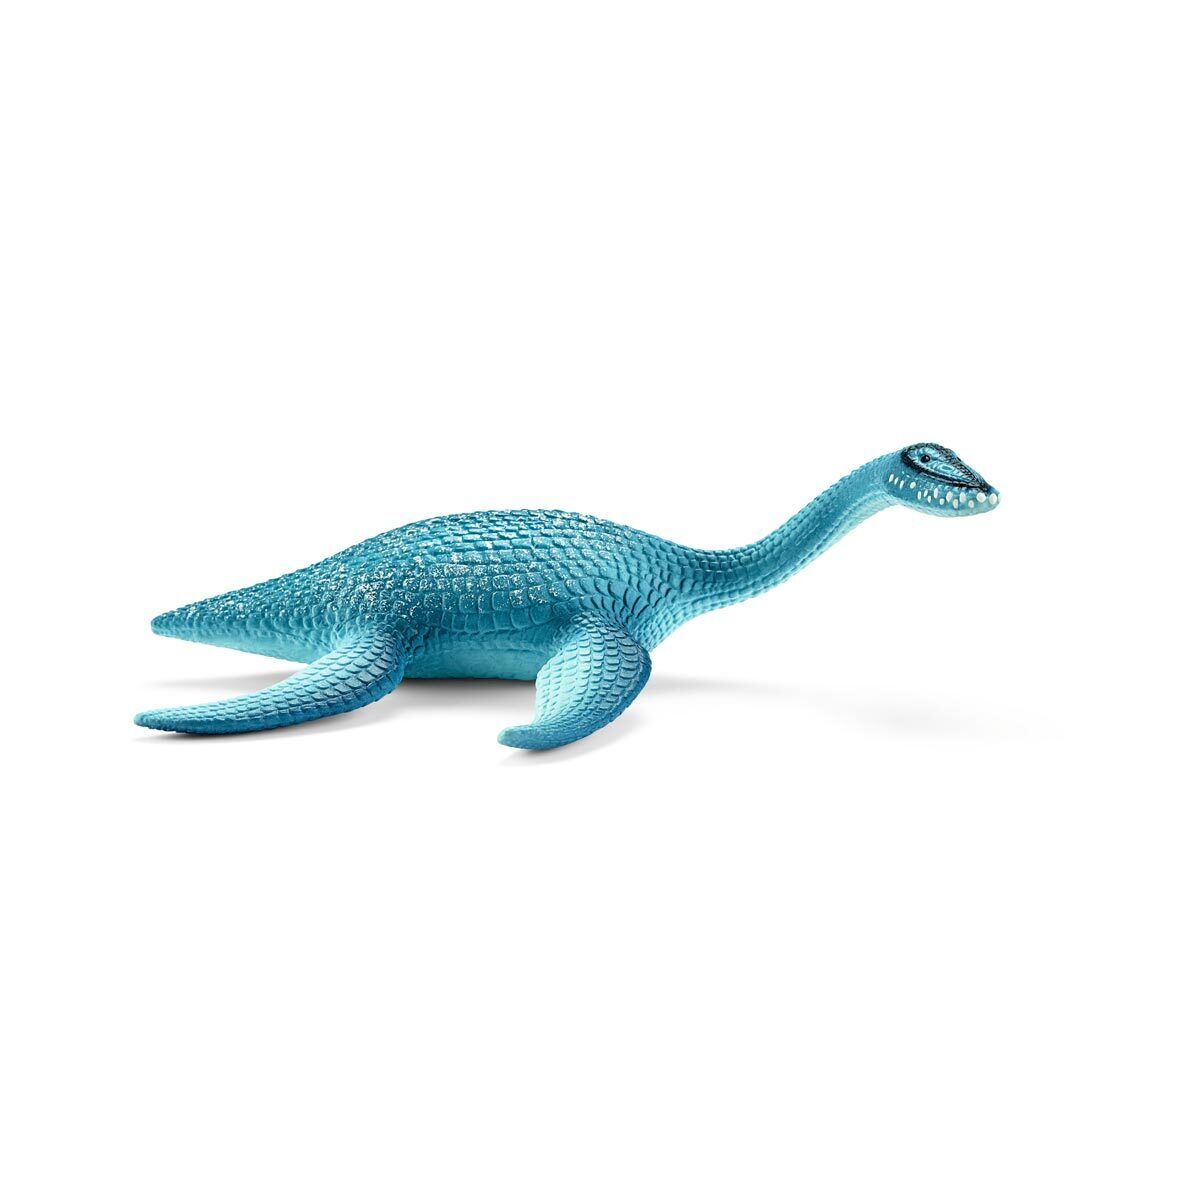 Plesiosaurus Dinosaur Figure by Schleich 15016